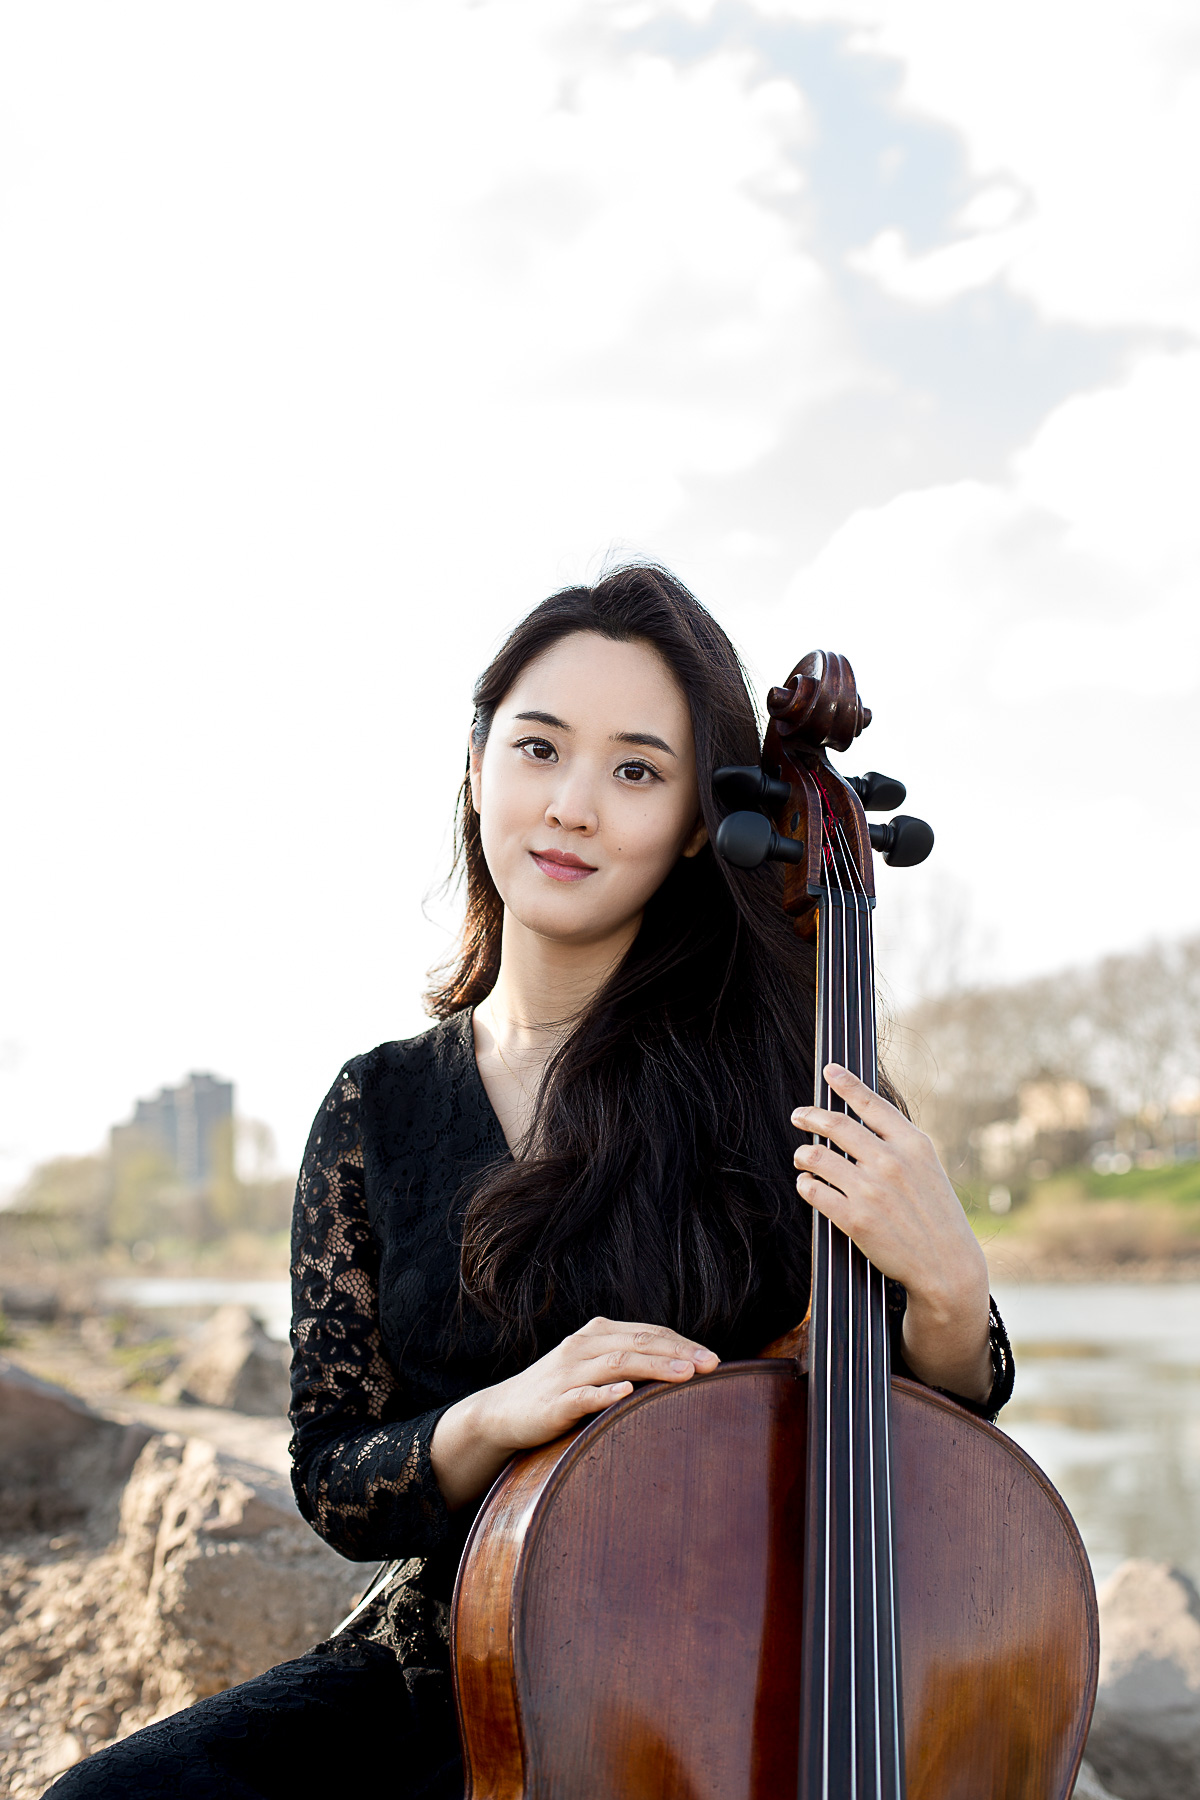 Outdoorportraitfoto einer asiatischen, jungen Singlefrau mit Cello am Neckar in Mannheim